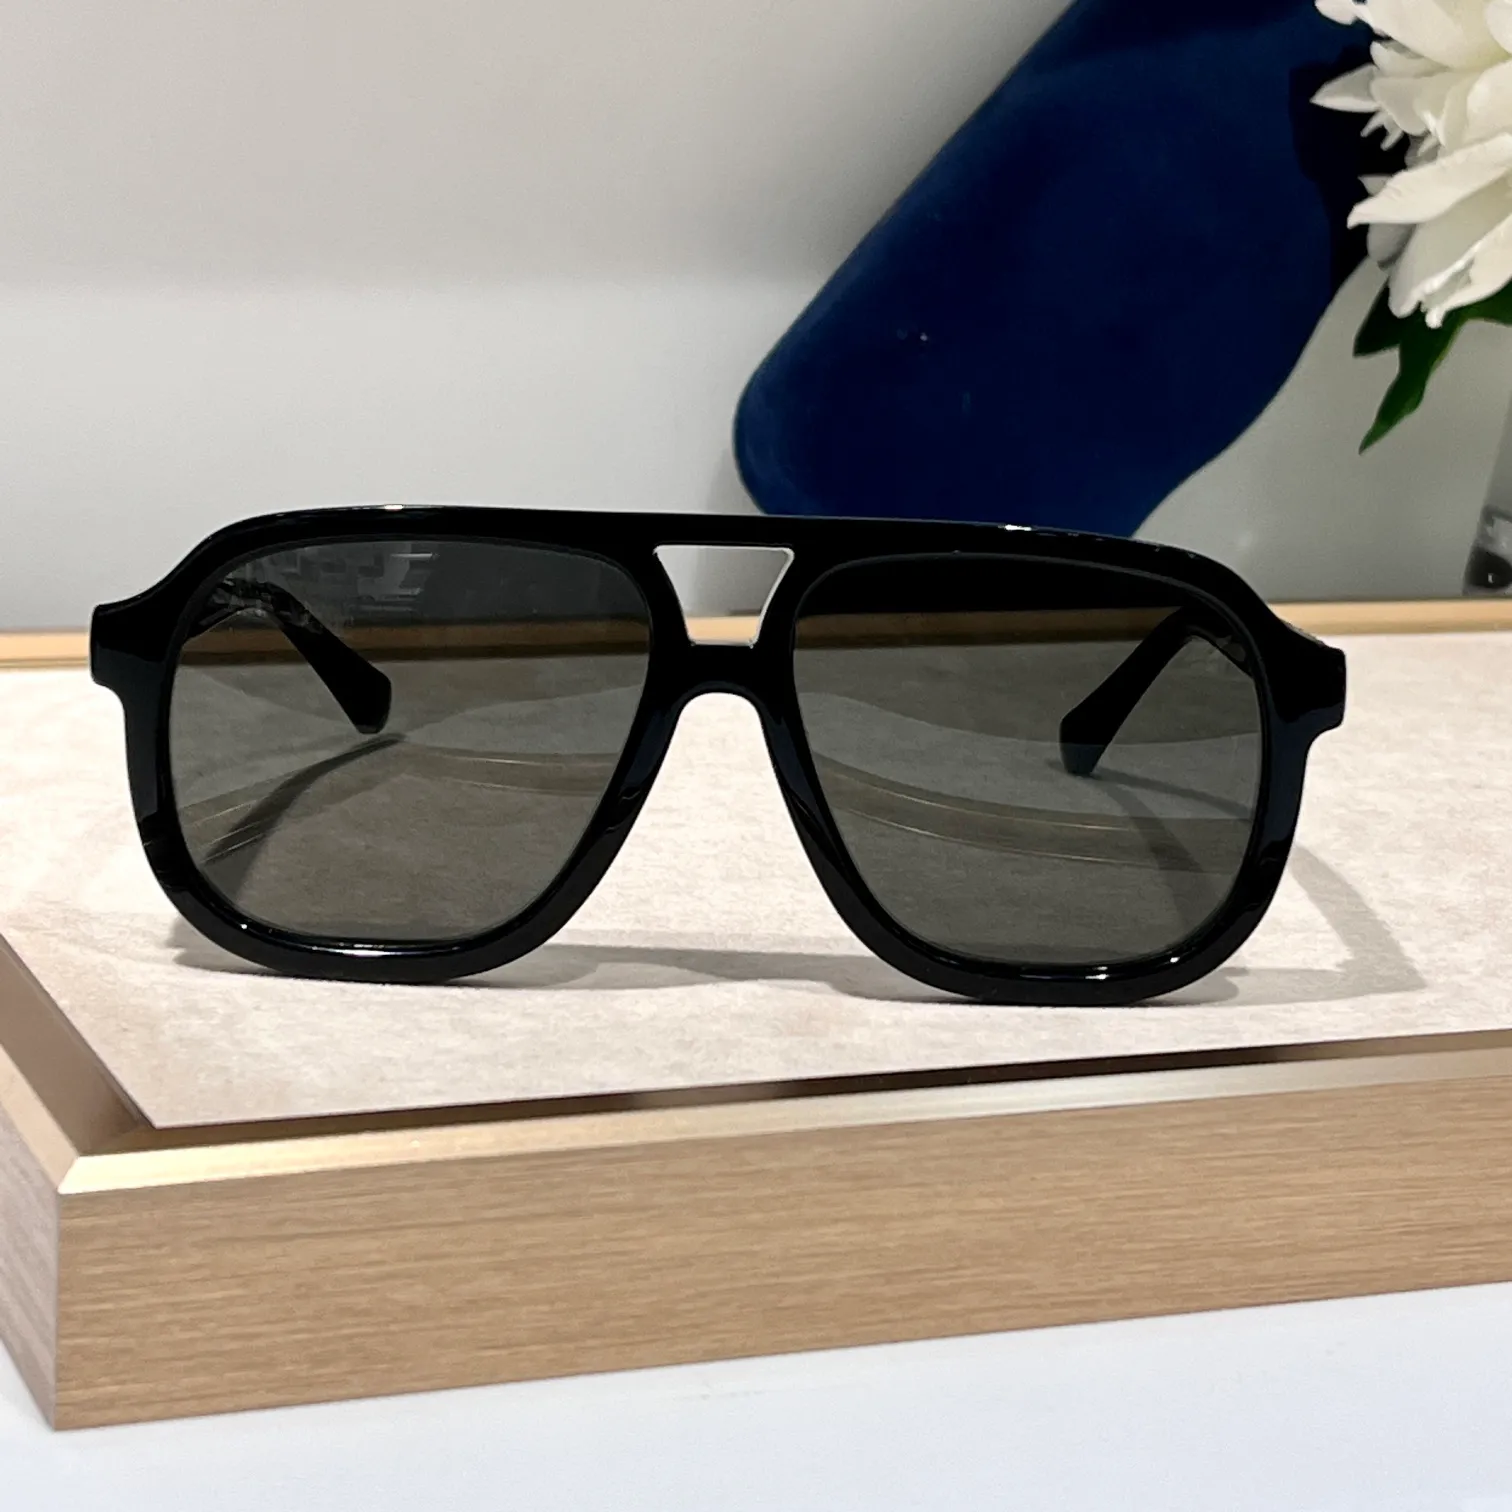 Navigator óculos de sol 1188 preto cinza fumaça masculino designer óculos de sol tons sunnies gafas de sol uv400 óculos com caixa